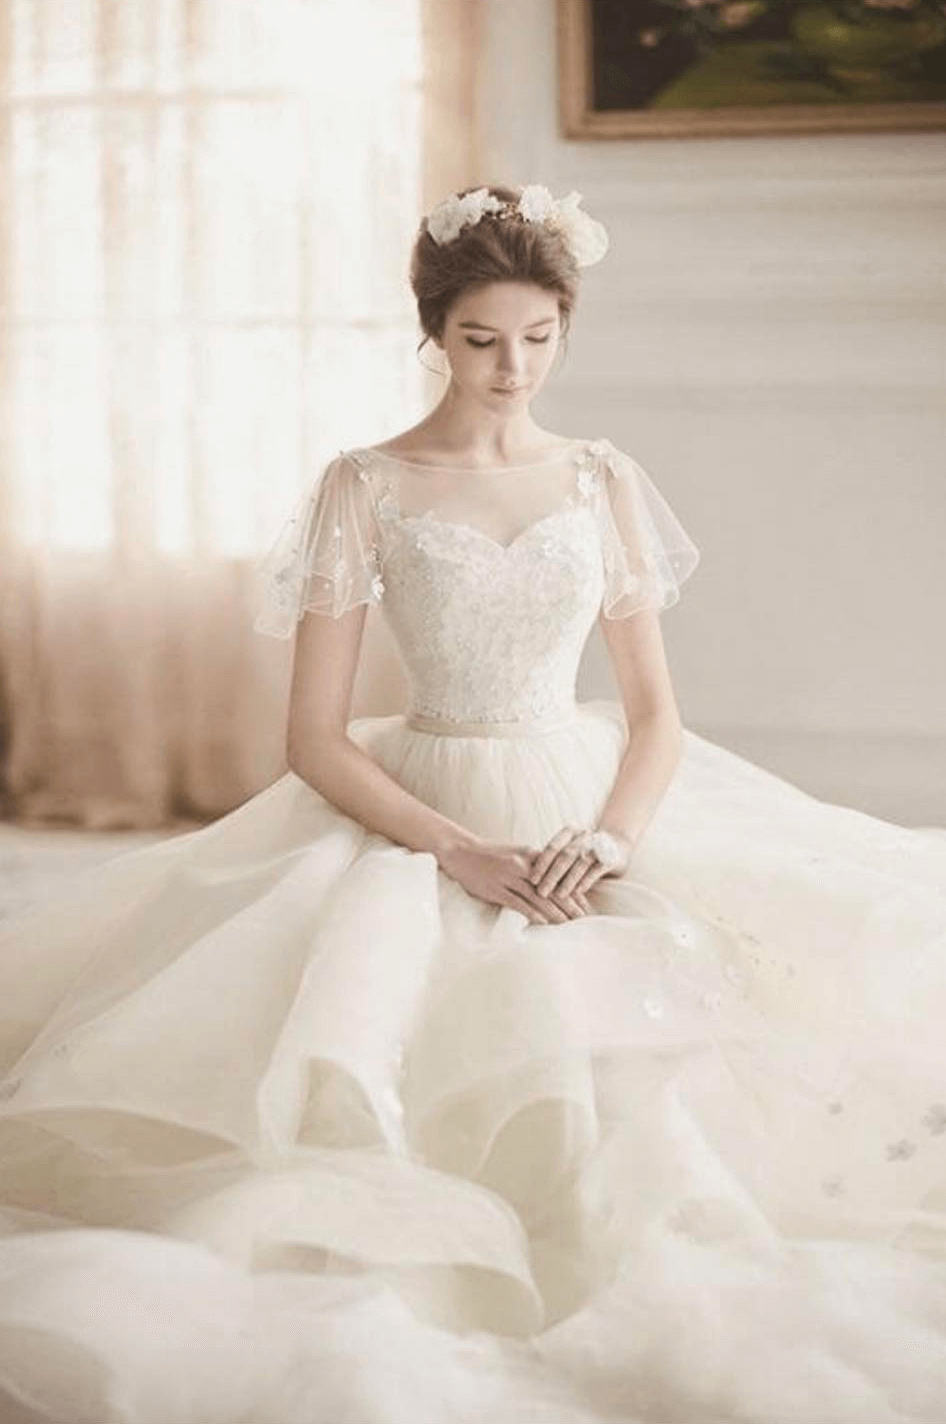 Những mẫu váy cưới trắng biến cô dâu xinh trong tíc tắc  Trang sức cưới hỏi